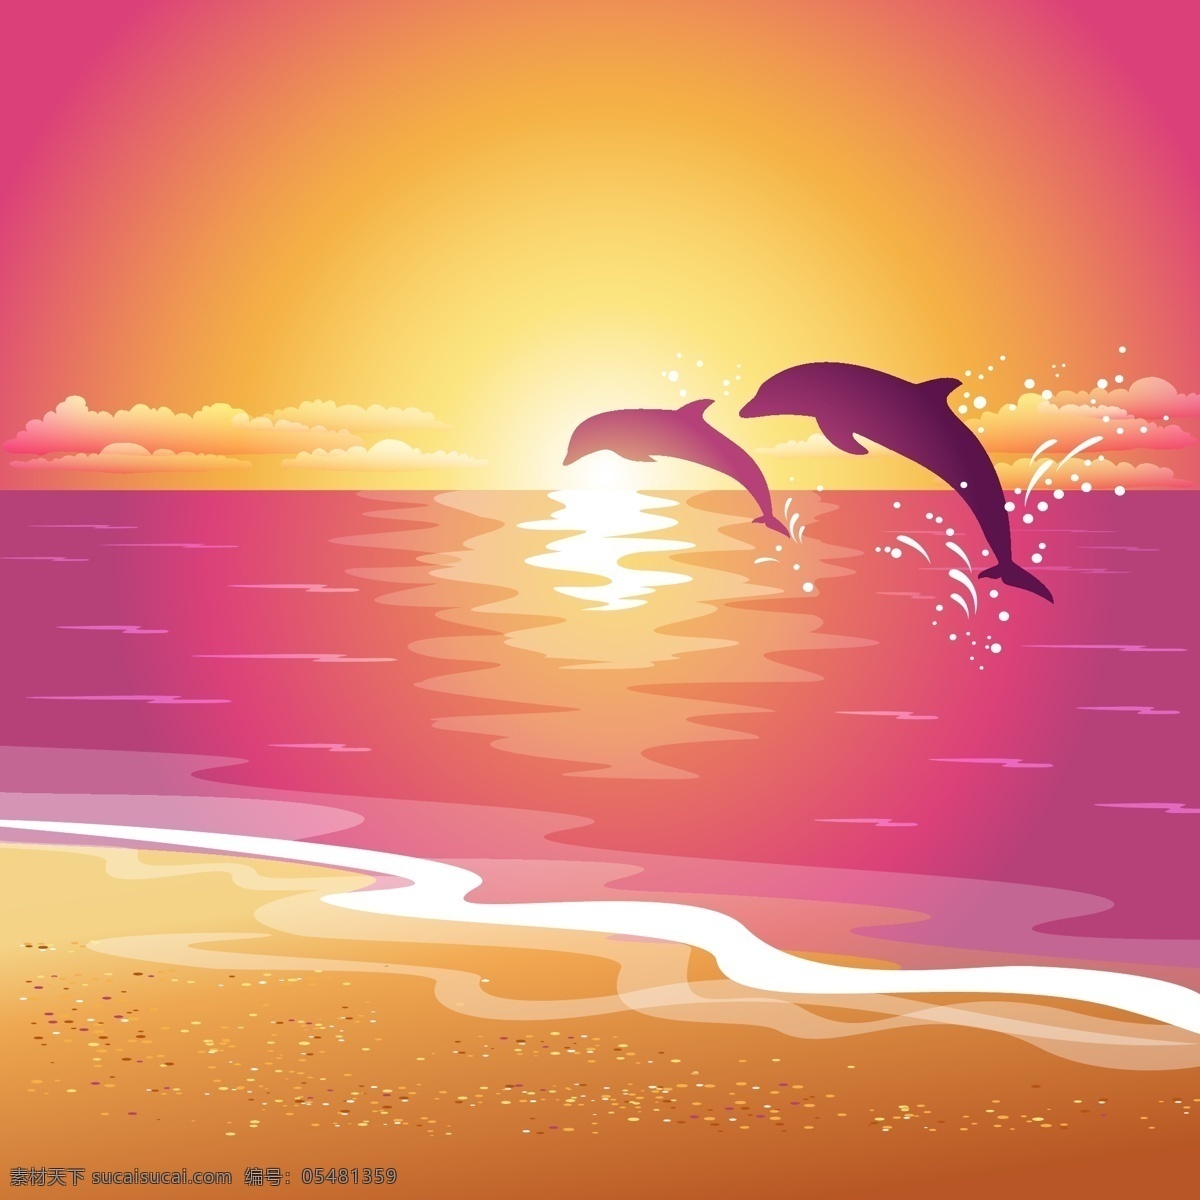 夕阳下的沙滩 落日 夕阳 沙滩 海豚 橙色